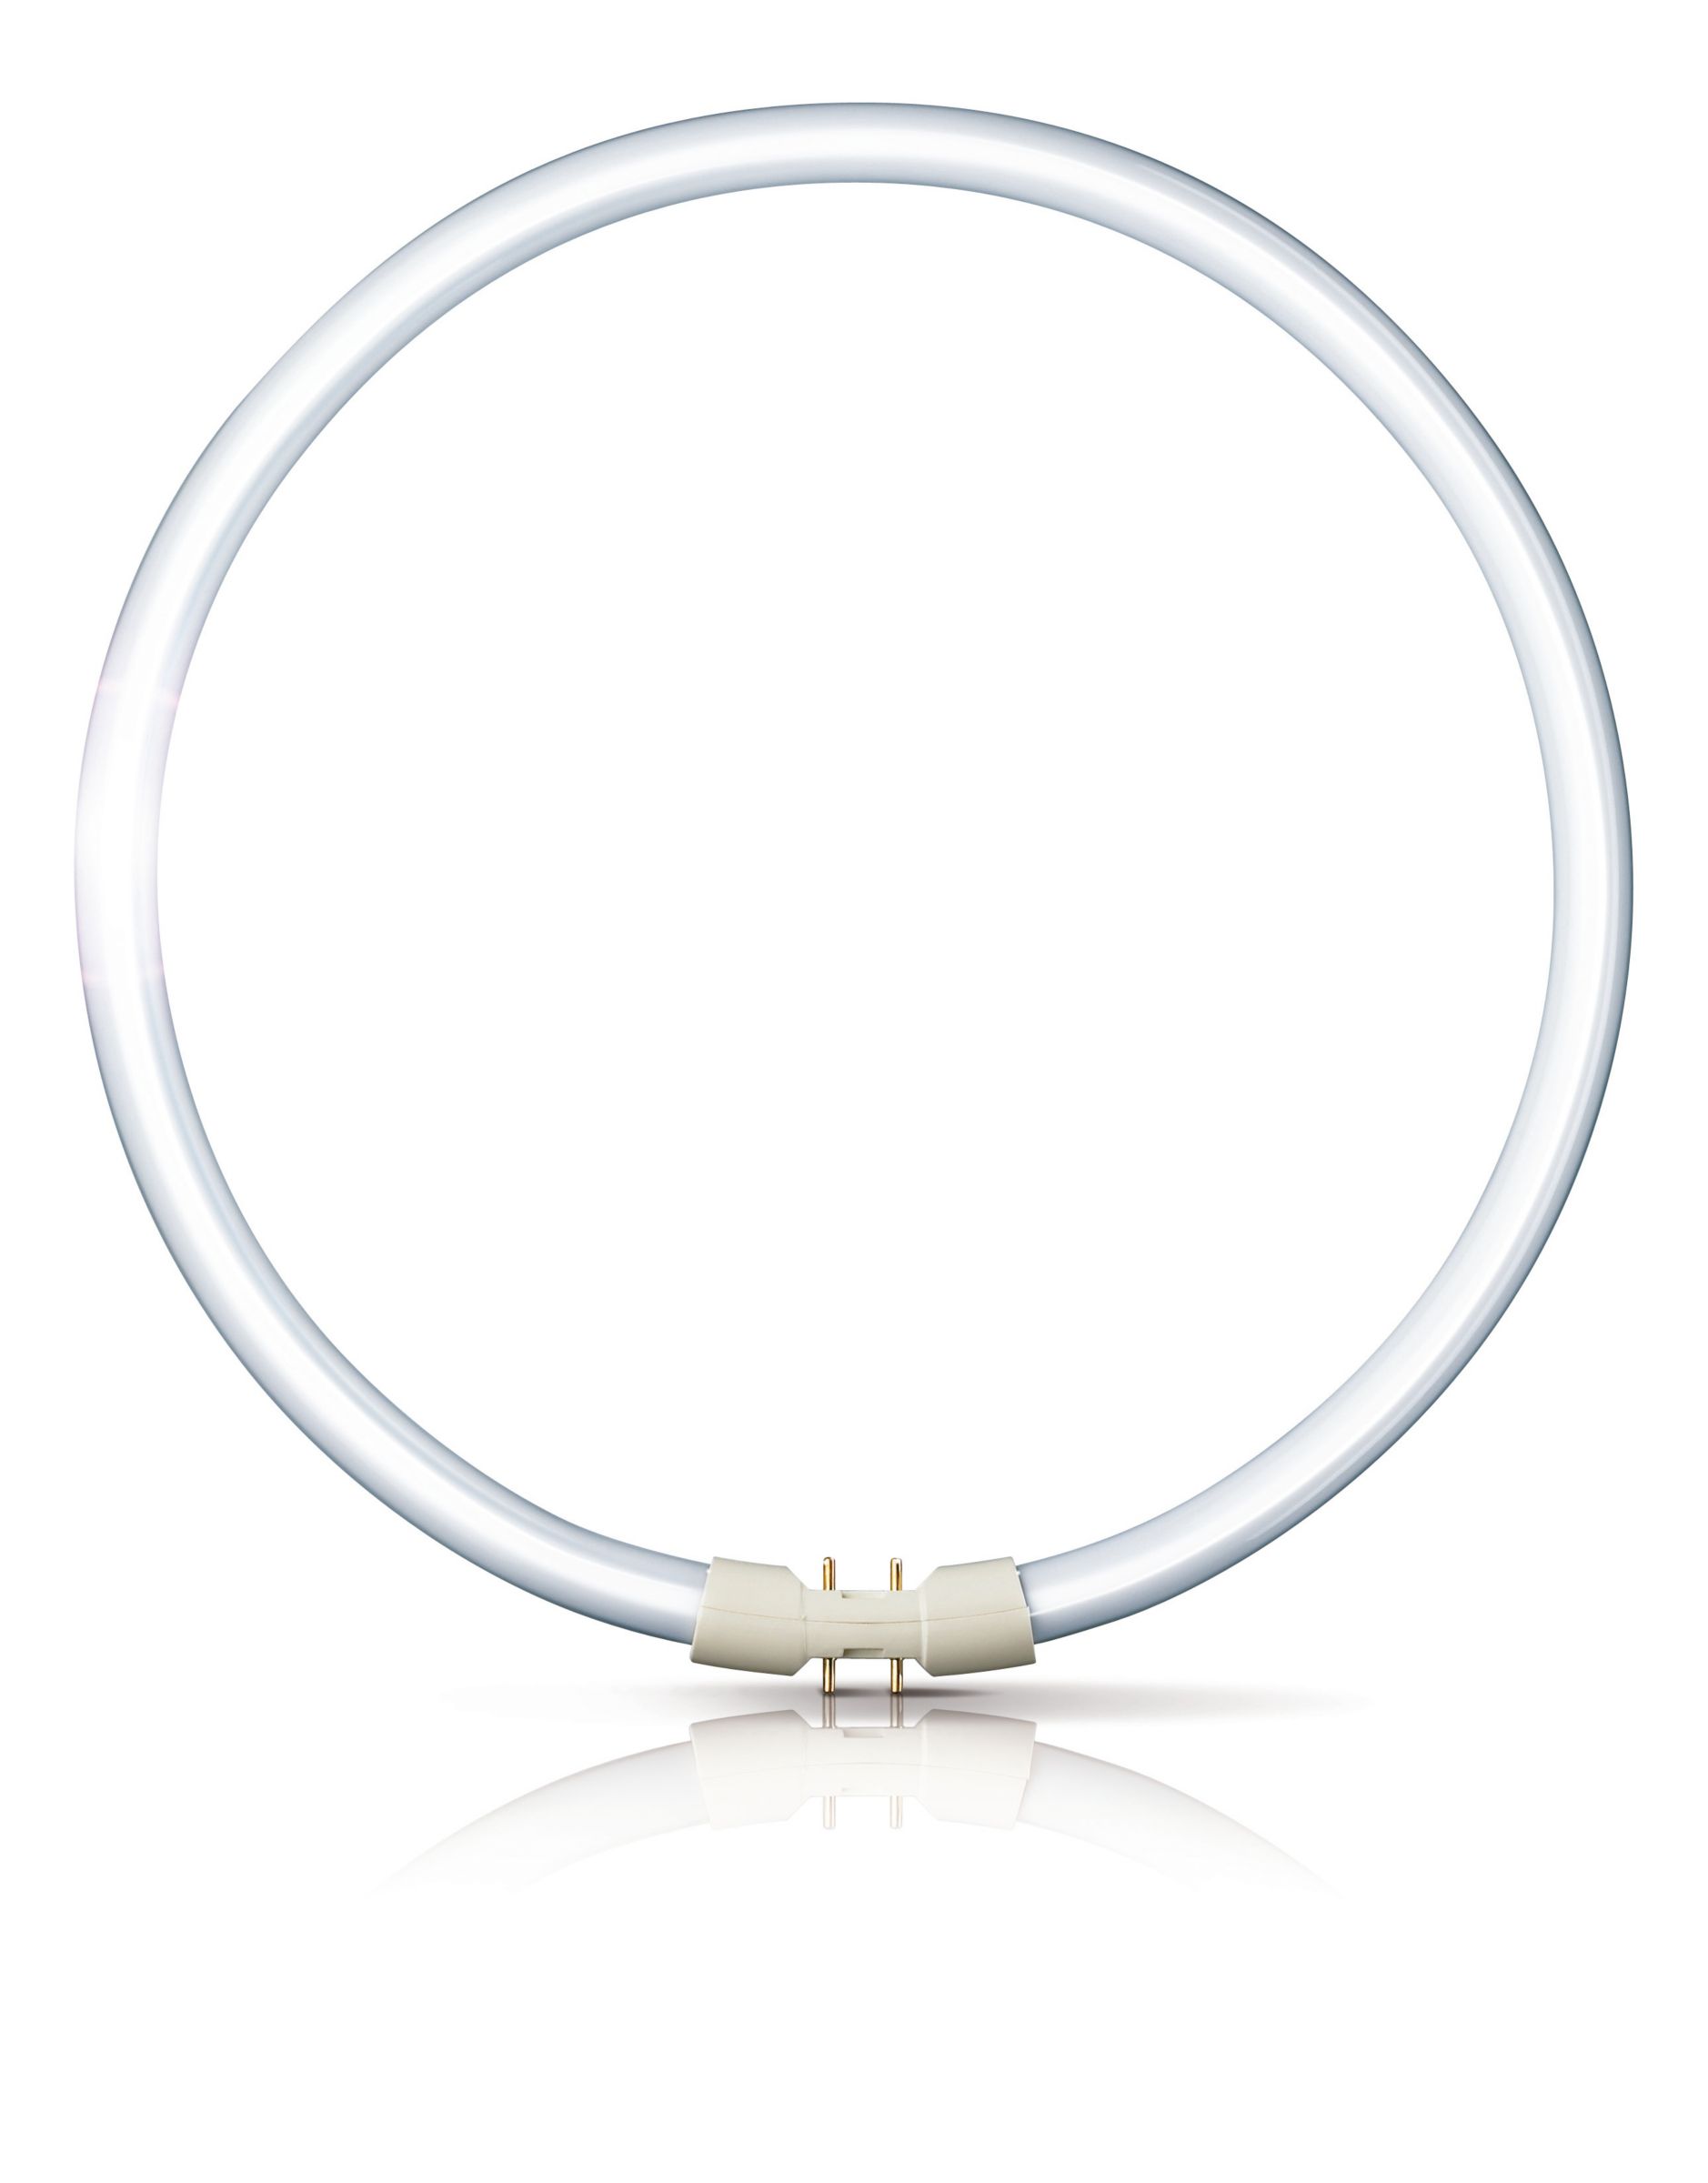 MASTER Circular | TL5C8 | Philips lighting